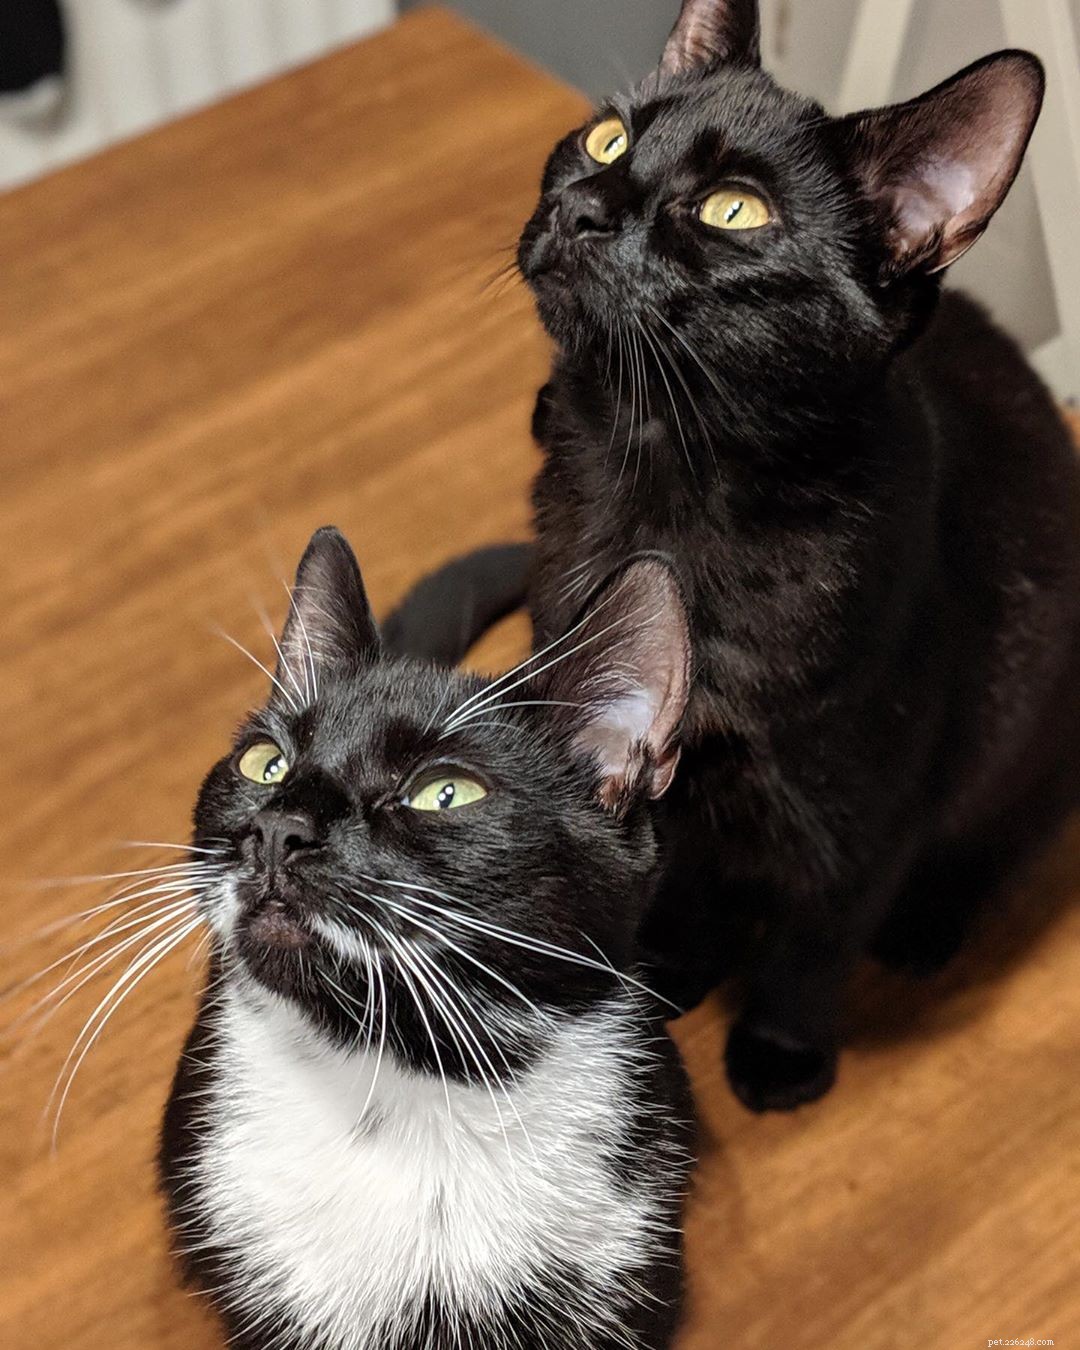 Se você é dono de irmãos felinos ou está apenas curioso sobre como os gatinhos aprendem sobre o mundo juntos, aqui estão 5 curiosidades sobre irmãos gatos. 